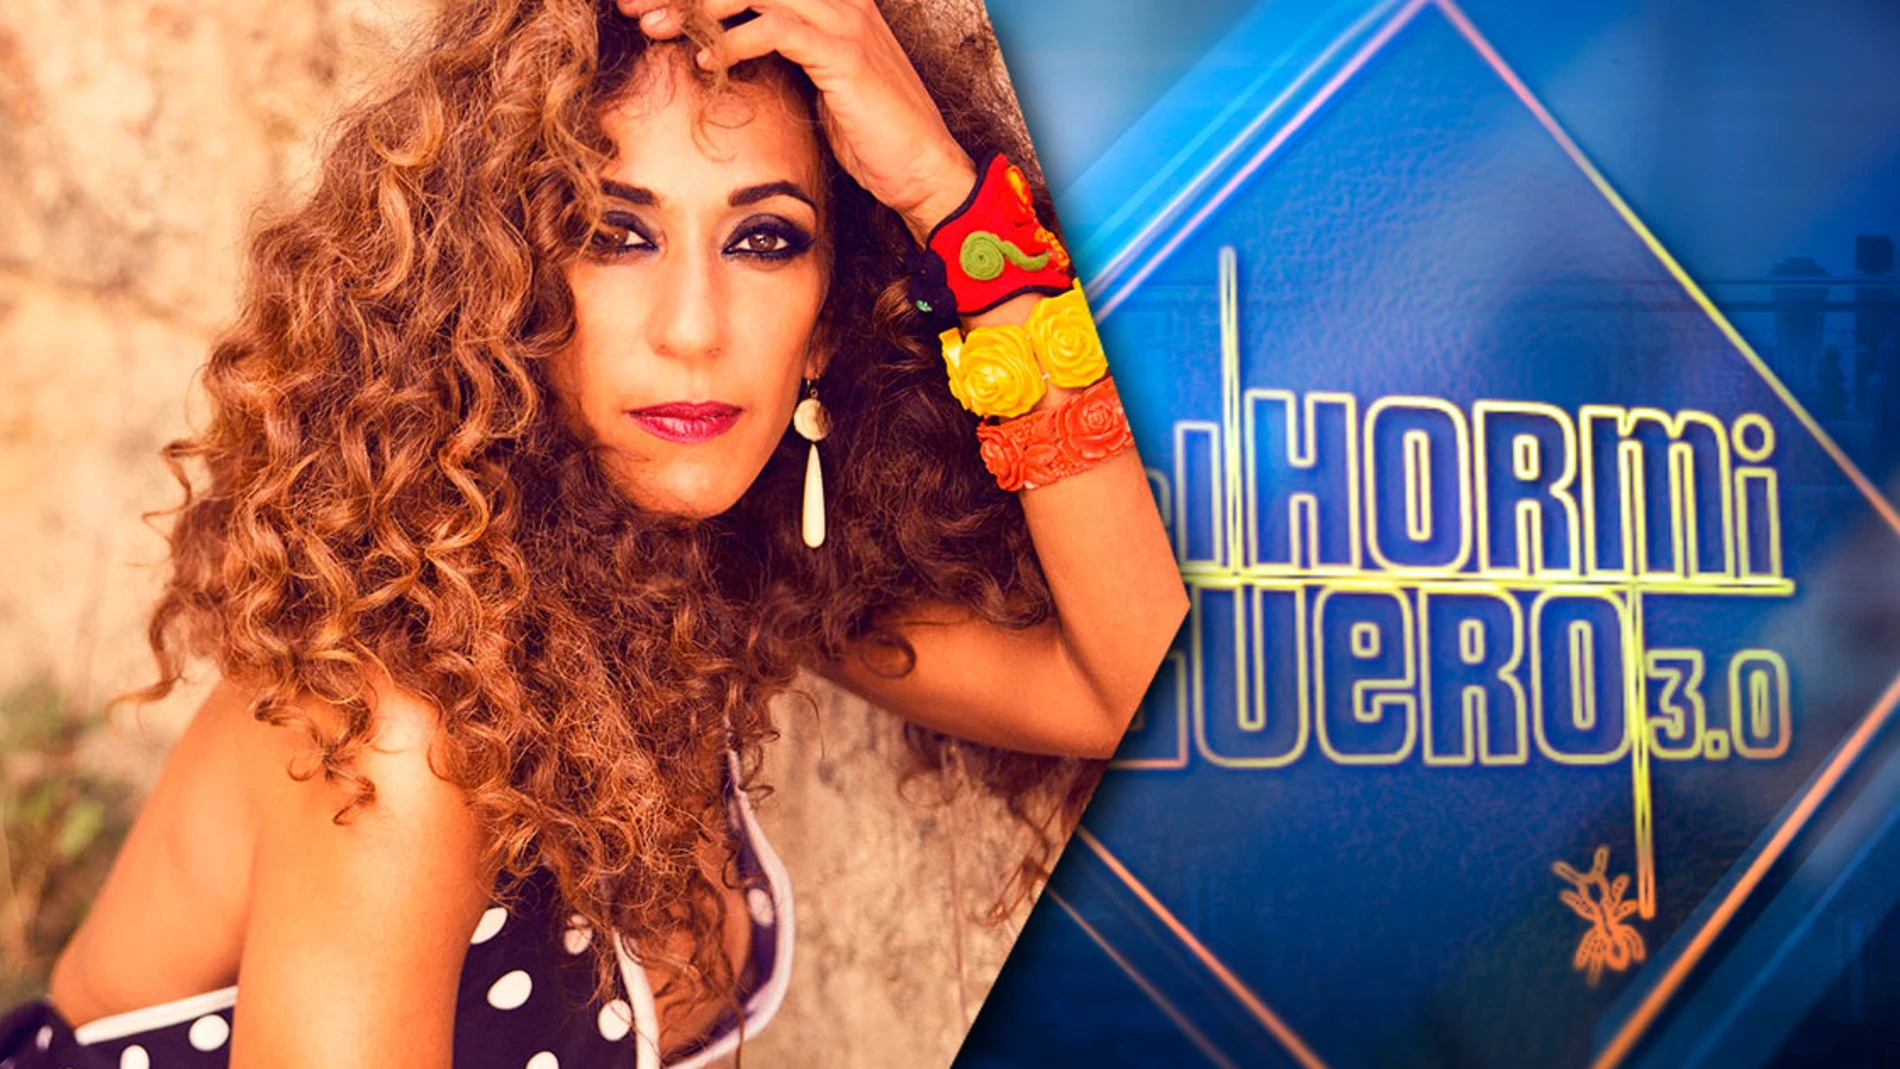 El miércoles, la cantante Rosario anuncia su nuevo single en 'El Hormiguero 3.0'